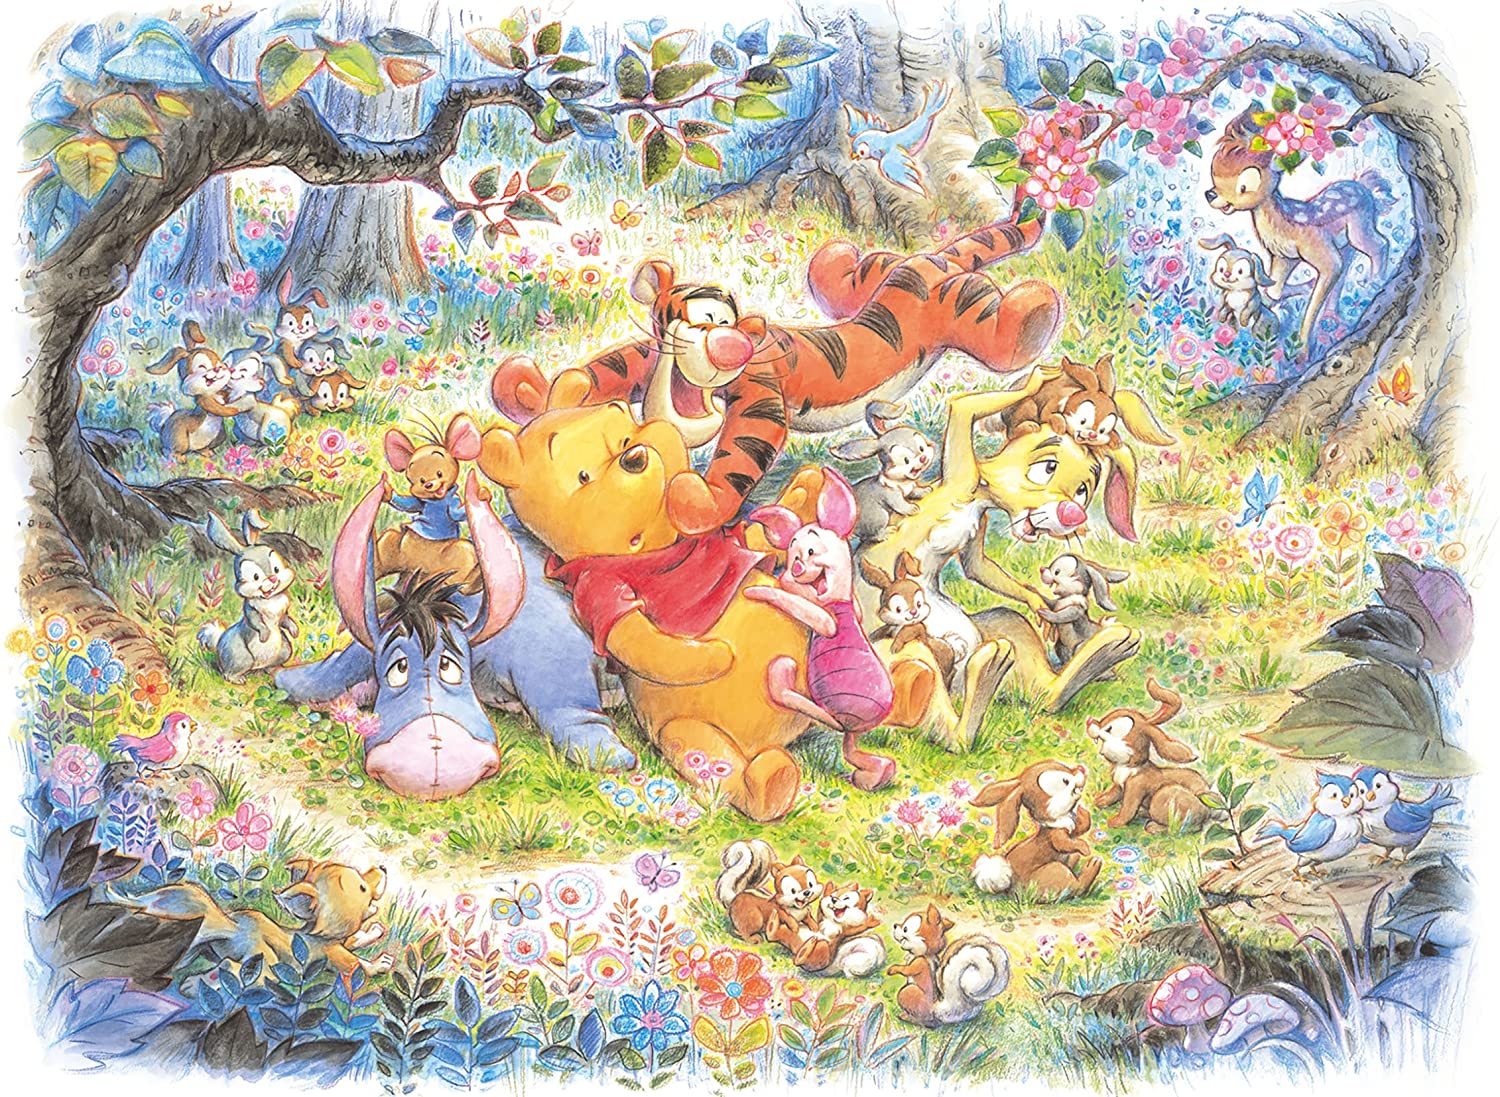 22.5 x 32 cm 200 Piece Jigsaw Puzzle Disney Winnie The Pooh Friends Memory 